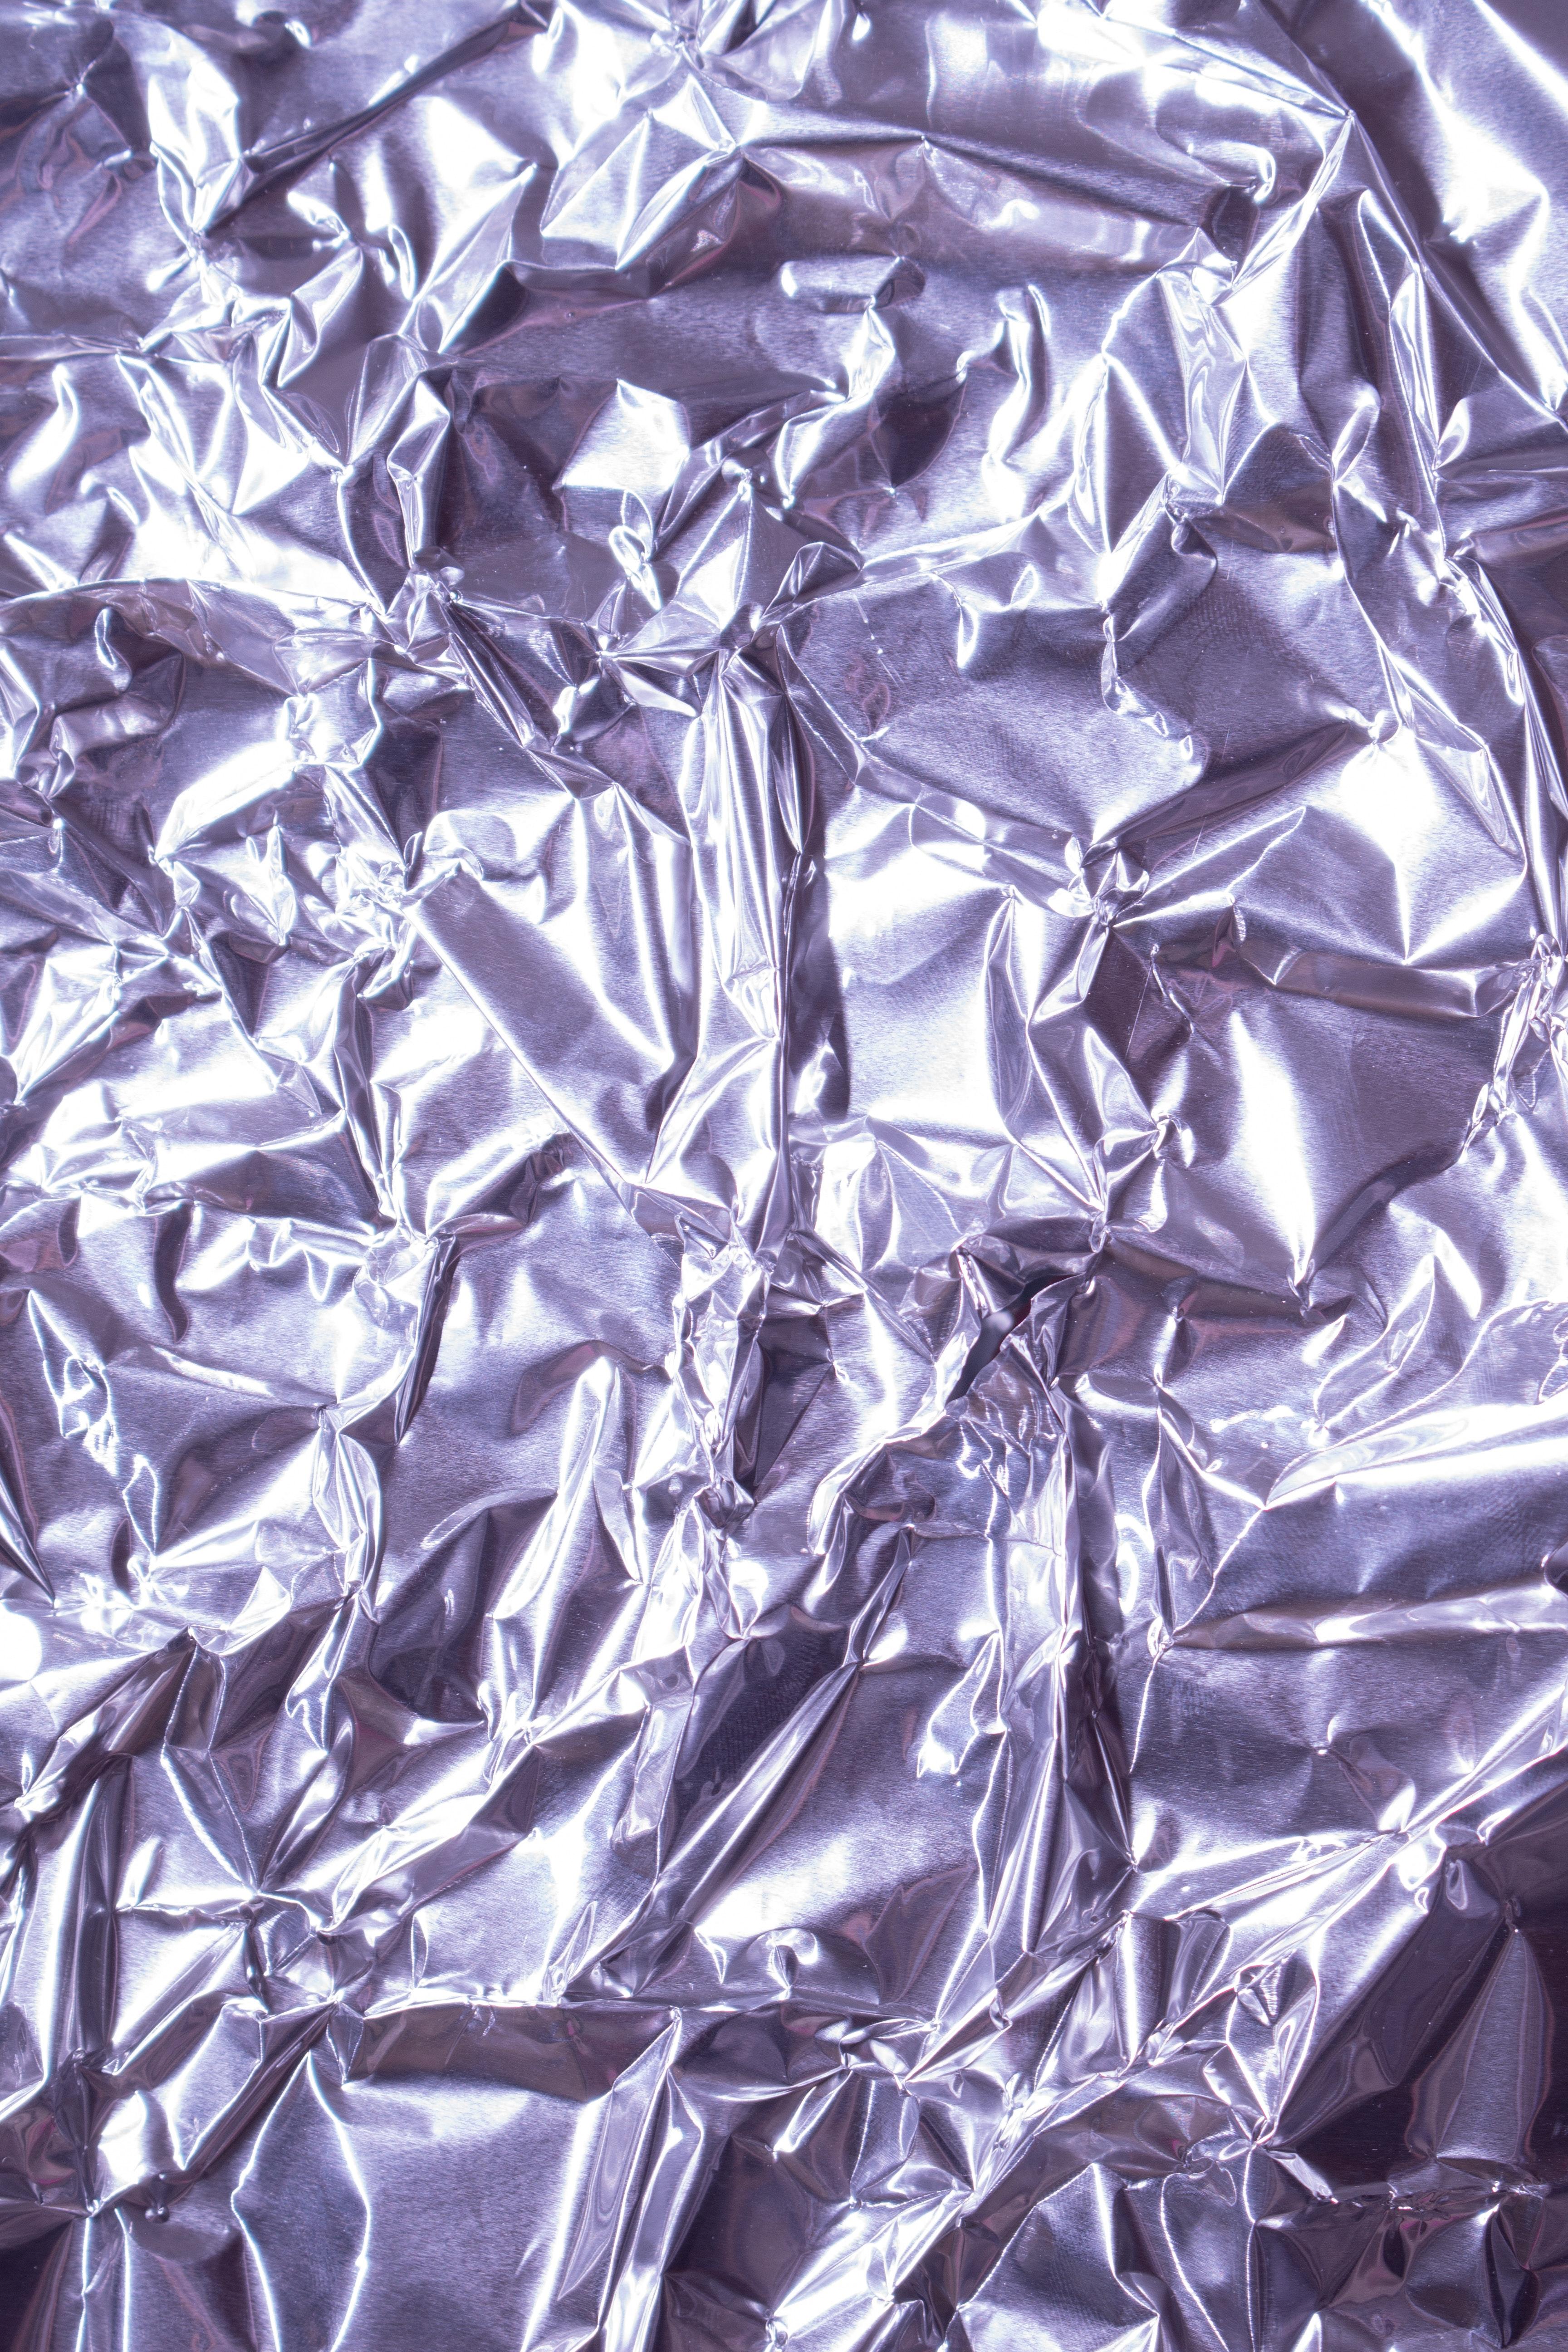 Is Aluminium foil a pure substance? 